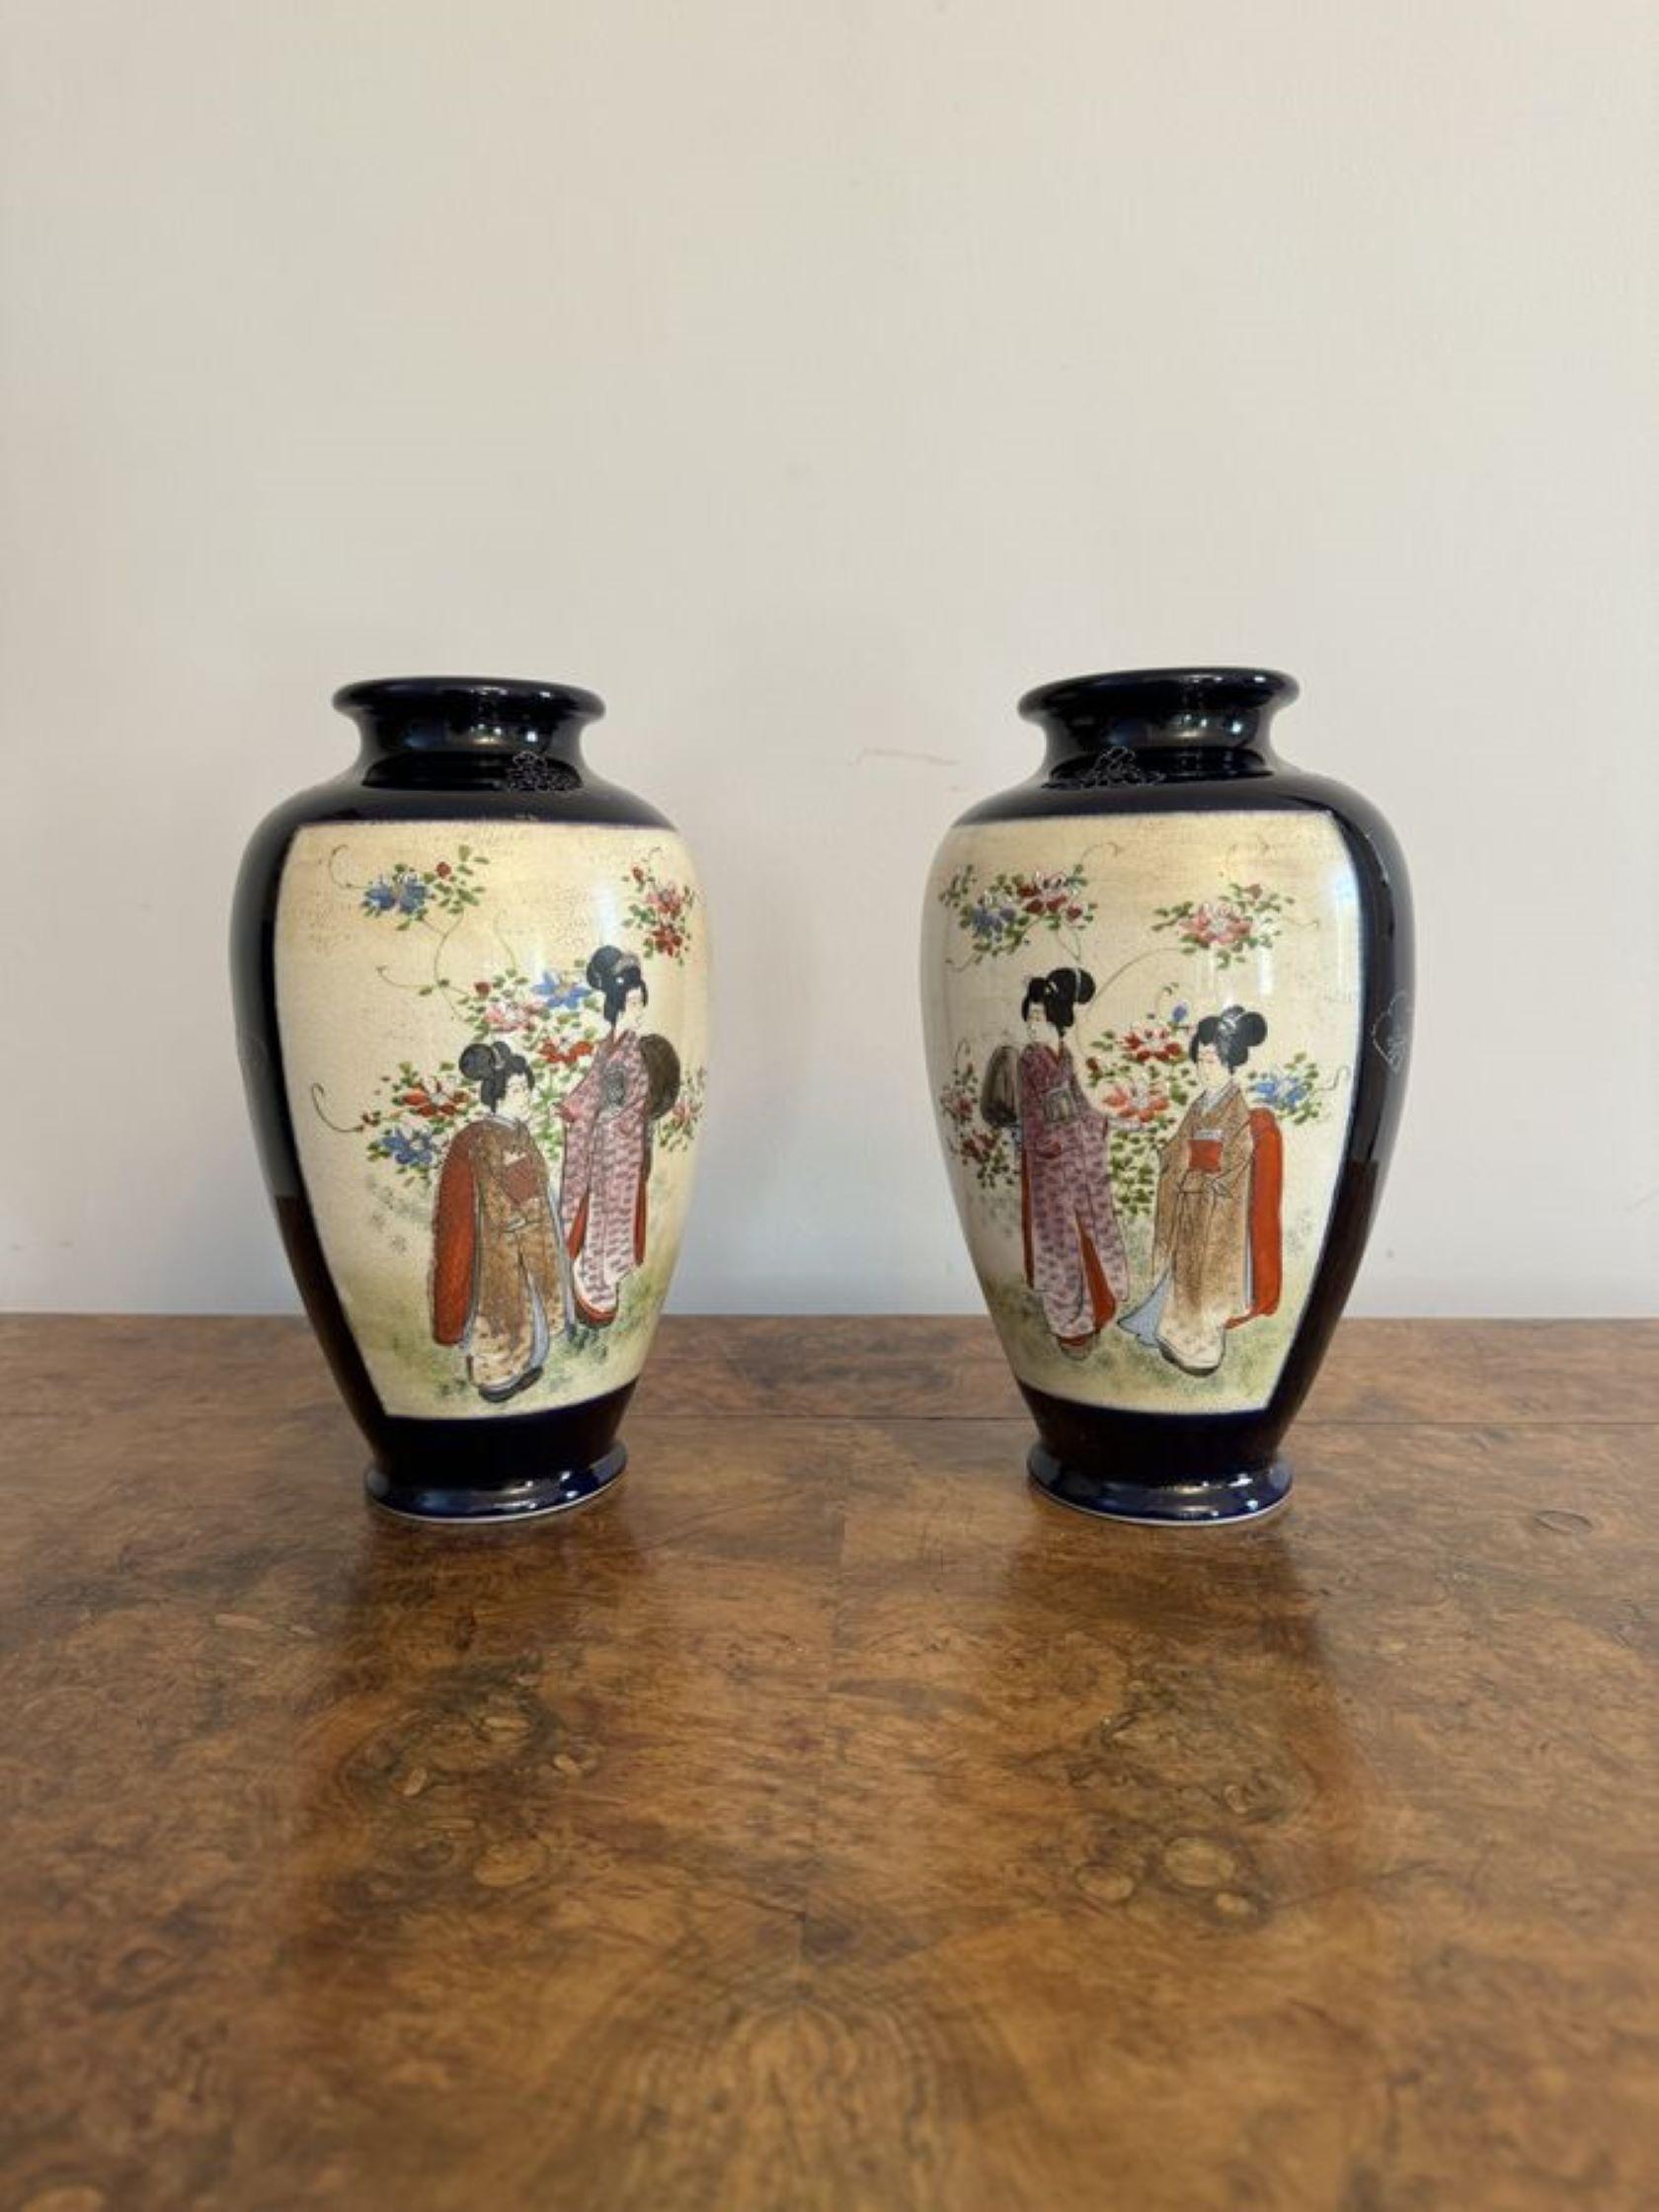 Wunderschönes Paar antiker japanischer Satsuma-Vasen mit einem Paar antiker japanischer Satsuma-Vasen mit wundervoller handgemalter Dekoration von Figuren- und Landschaftsszenen in blauen, roten, orangefarbenen, grünen, schwarzen und goldenen Farben